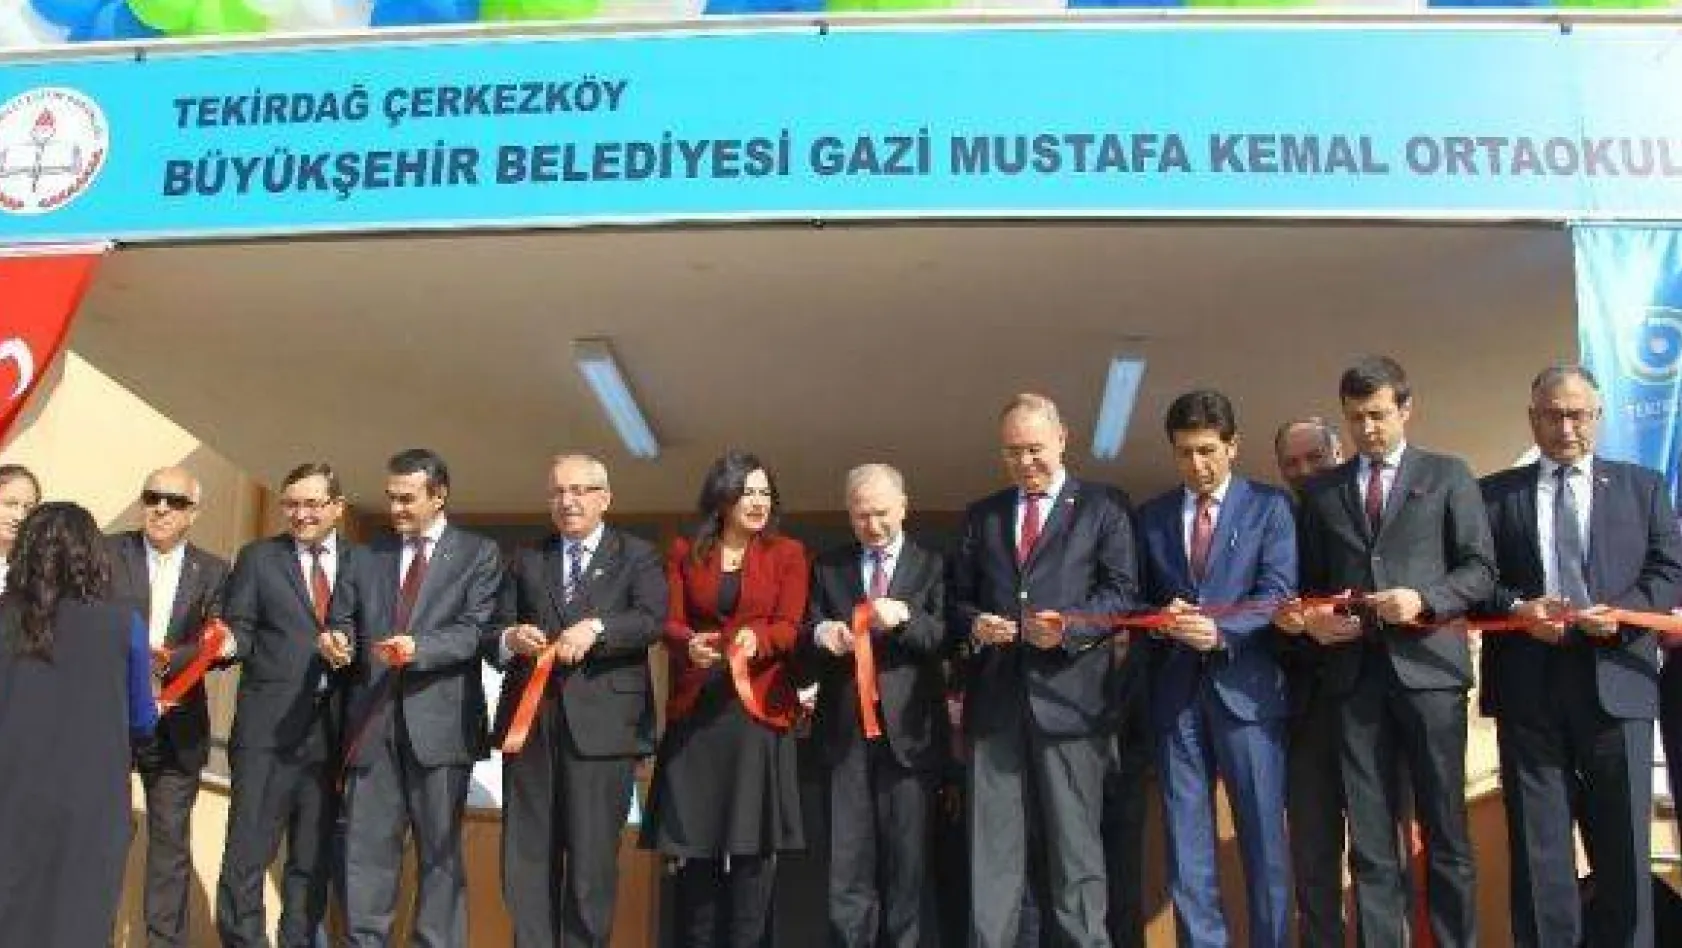 Çerkezköy'de yaptırılan 21 derslikli okul, Milli Eğitim'e devredildi